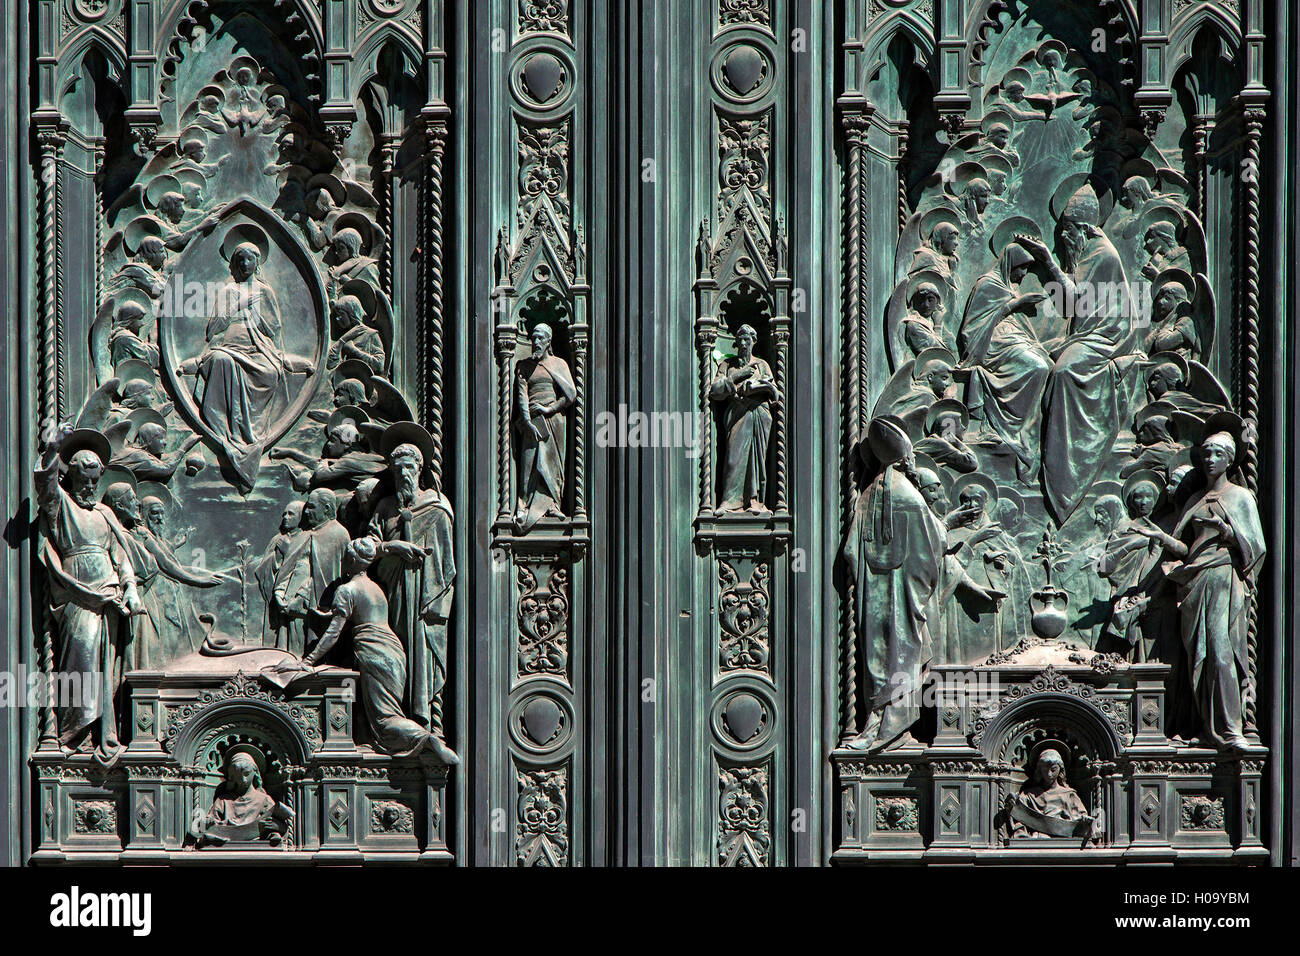 Dettaglio, ornato portale di ingresso, Cattedrale di Santa Maria del Fiore, Firenze, Toscana, Italia Foto Stock